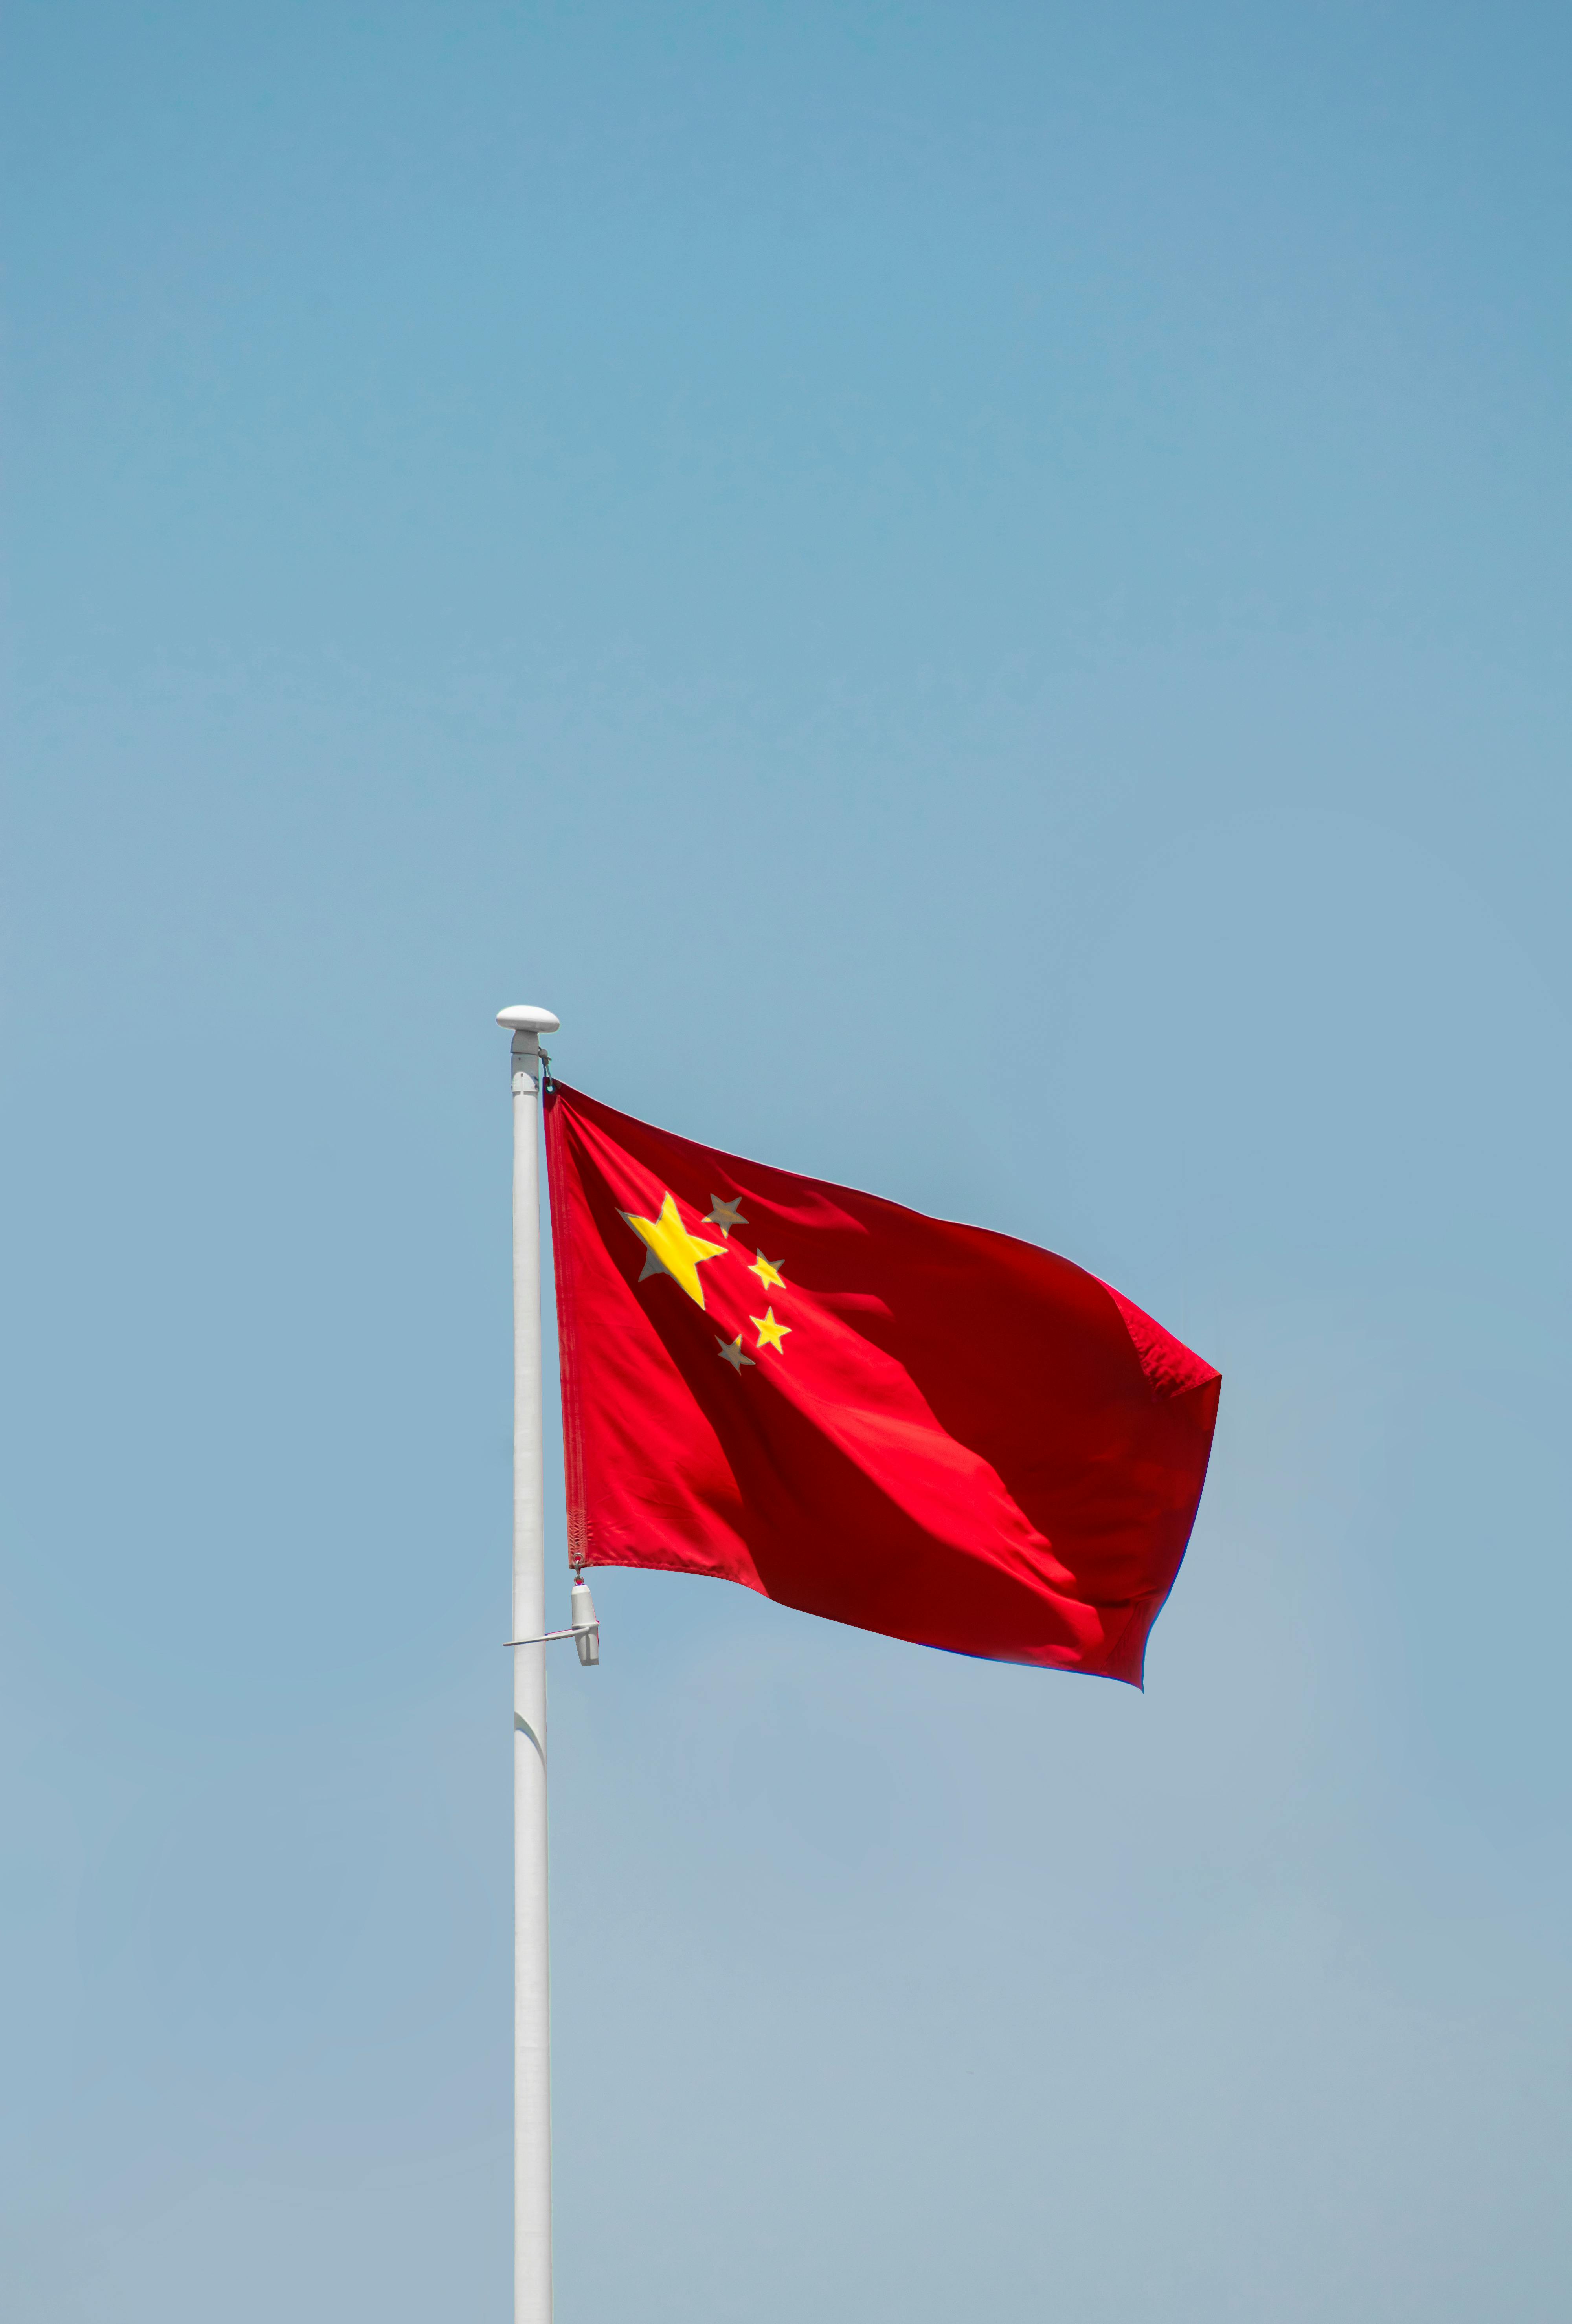 Cờ Trung Quốc là biểu tượng nhận diện quốc gia với sức mạnh kinh tế ngày càng tăng trưởng. Hãy cùng chiêm ngưỡng hình ảnh cờ Trung Quốc đầy uy quyền và kiêu hãnh để khám phá vẻ đẹp của nền văn hoá và lịch sử nước này.